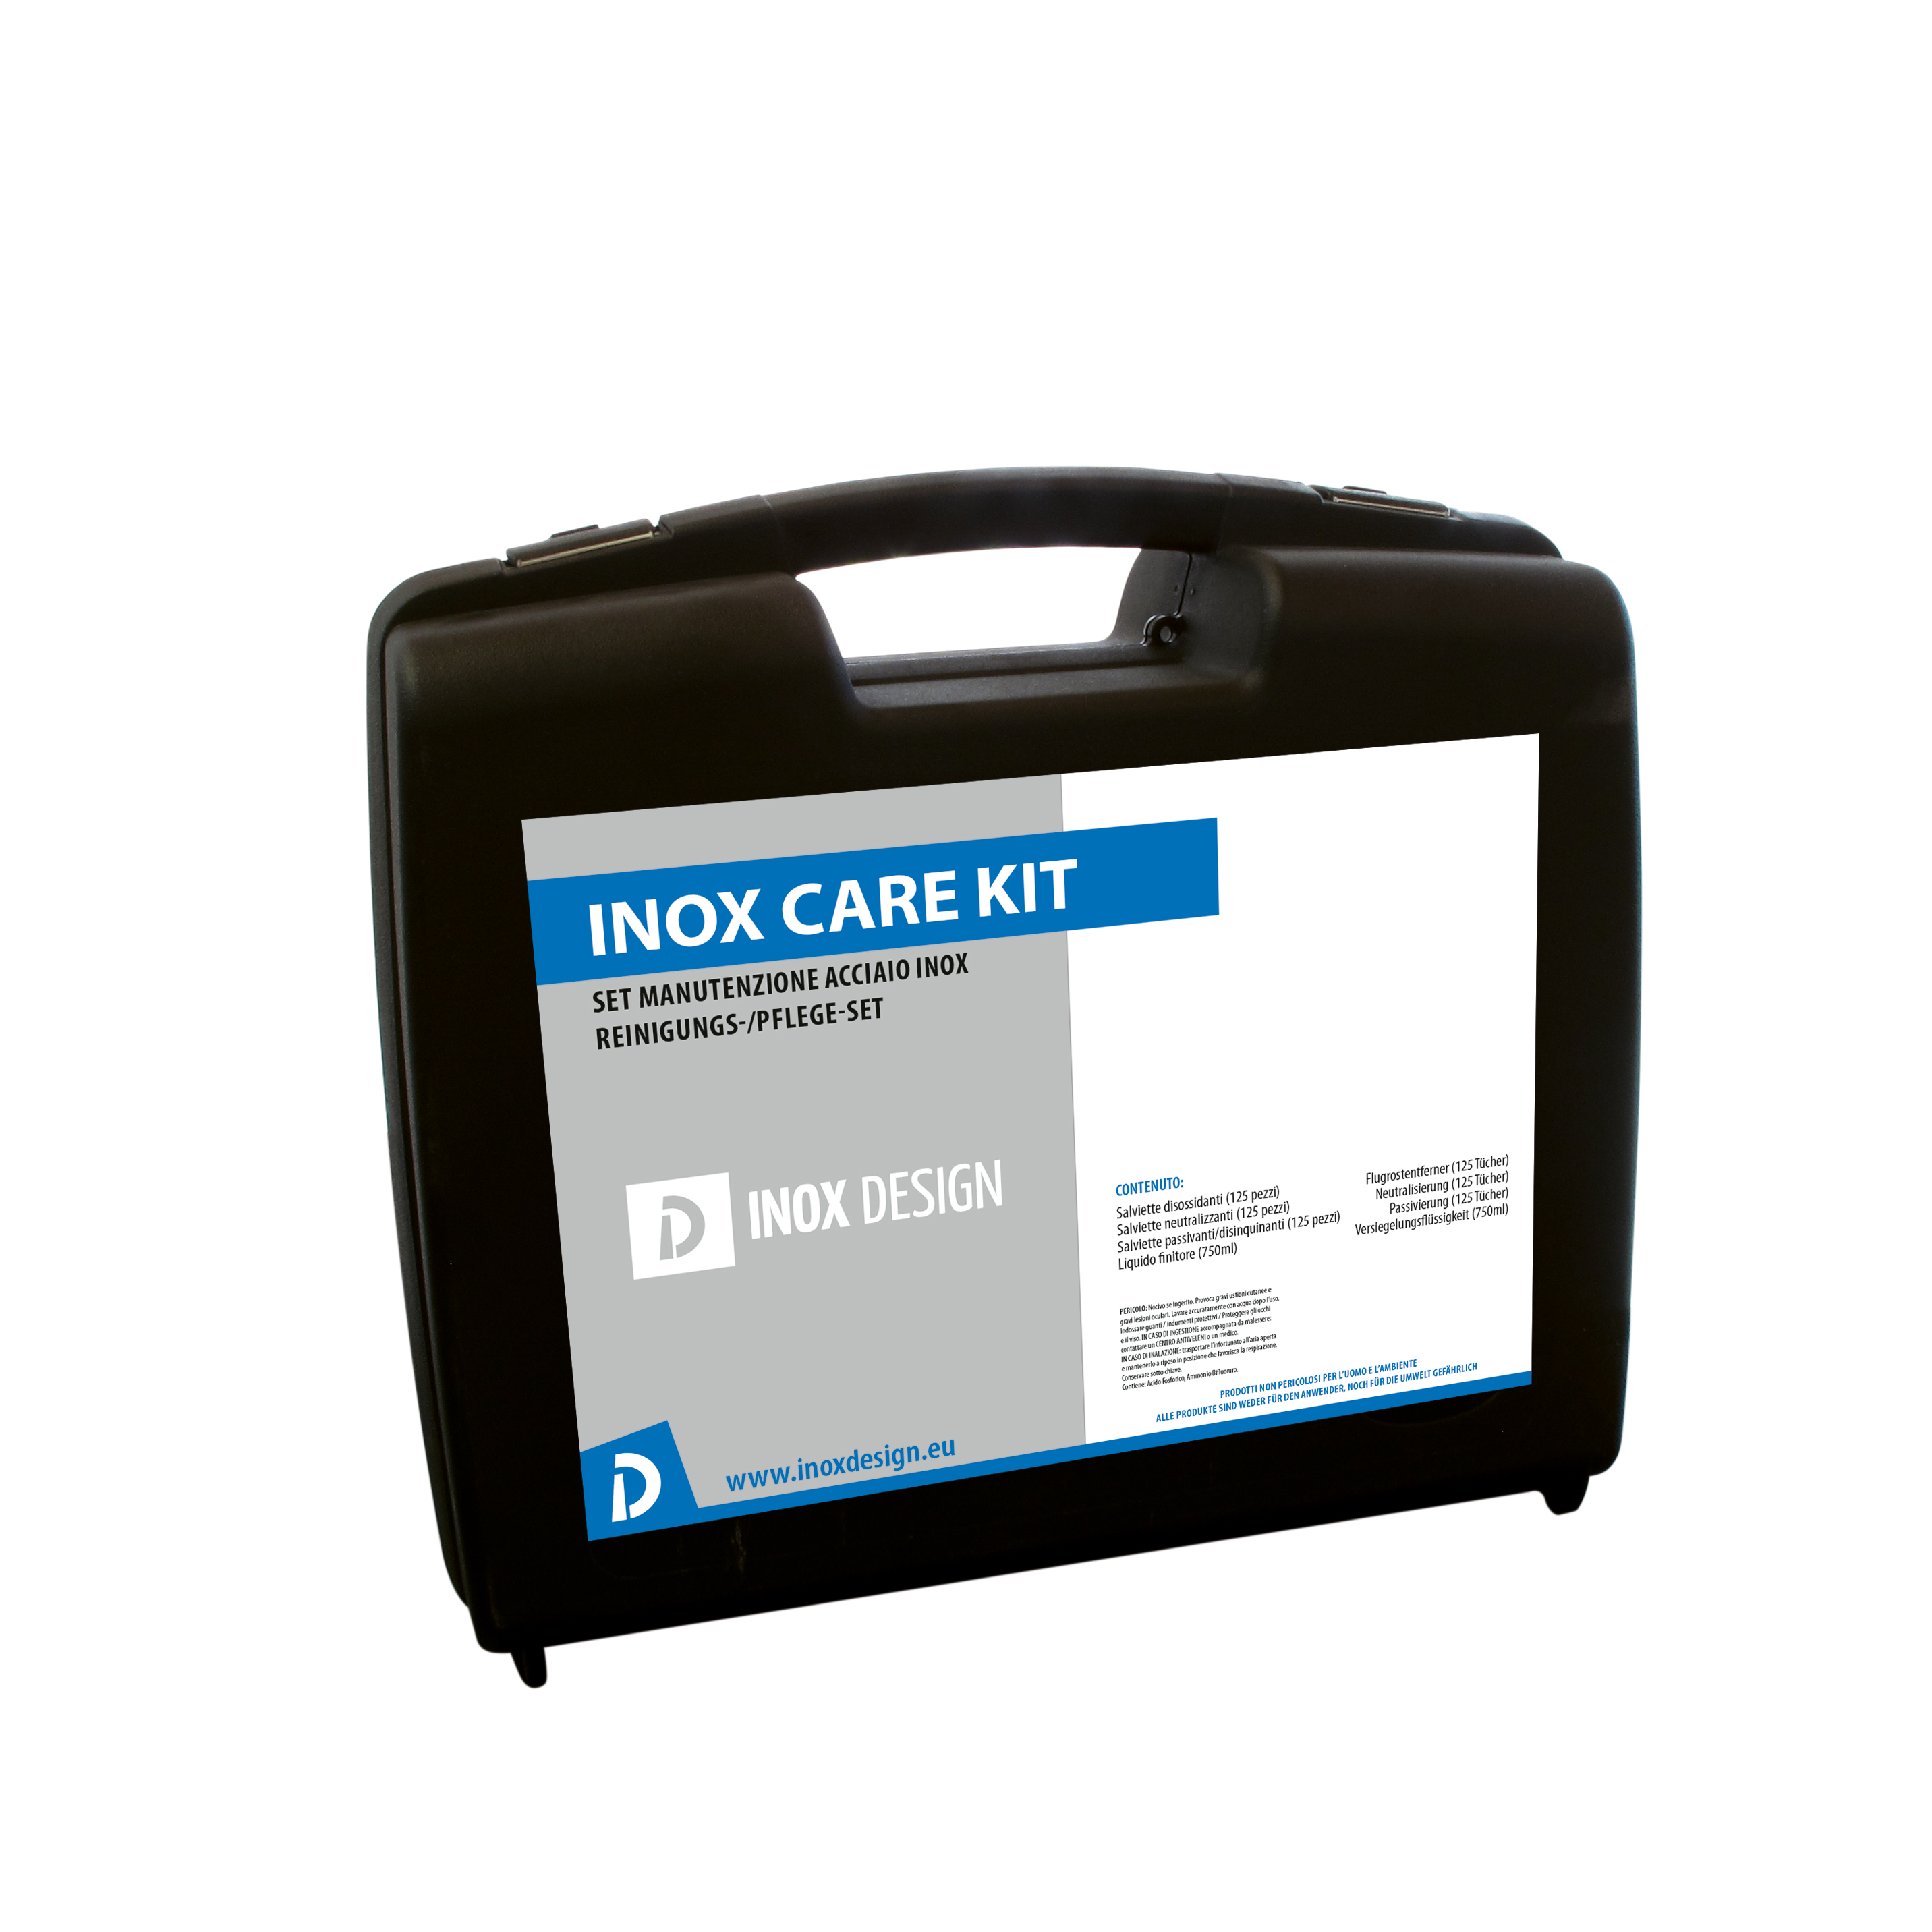 Inox Care Kit - Reinigungs-/Pfleg-set (Koffer)